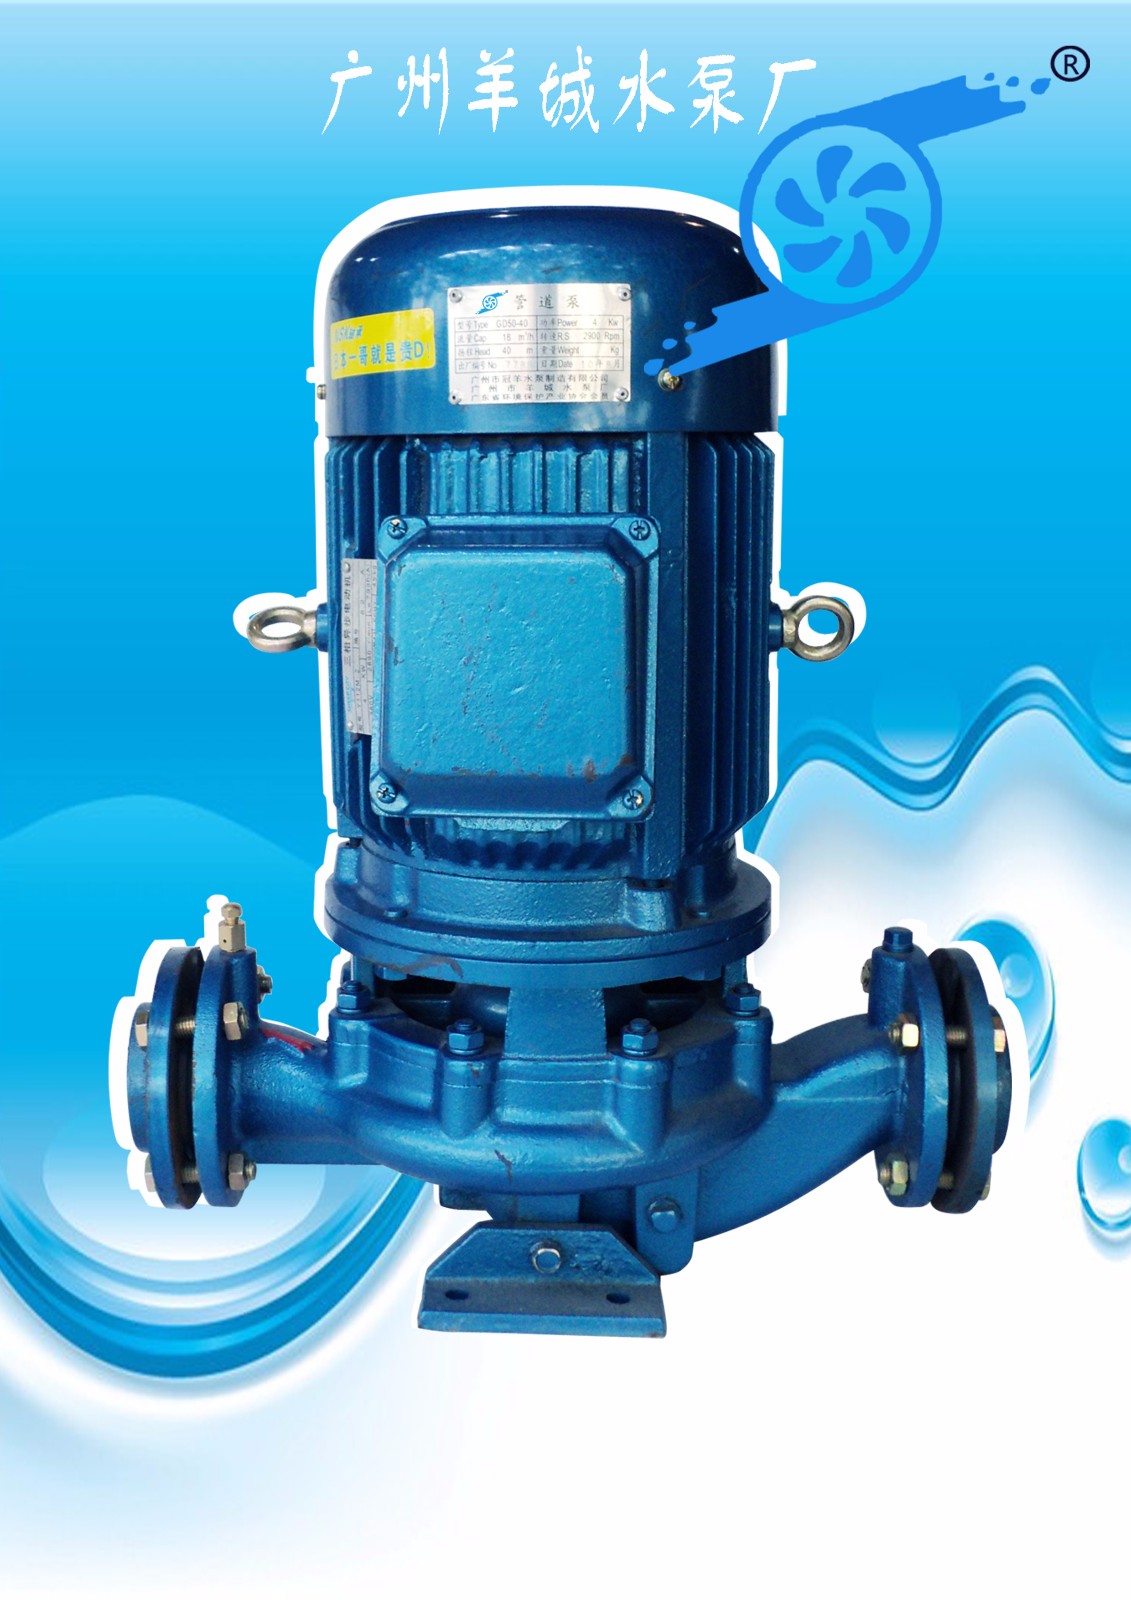 羊城水泵|GD管道泵|广州羊城水泵厂|羊城泵业|广州不锈钢水泵